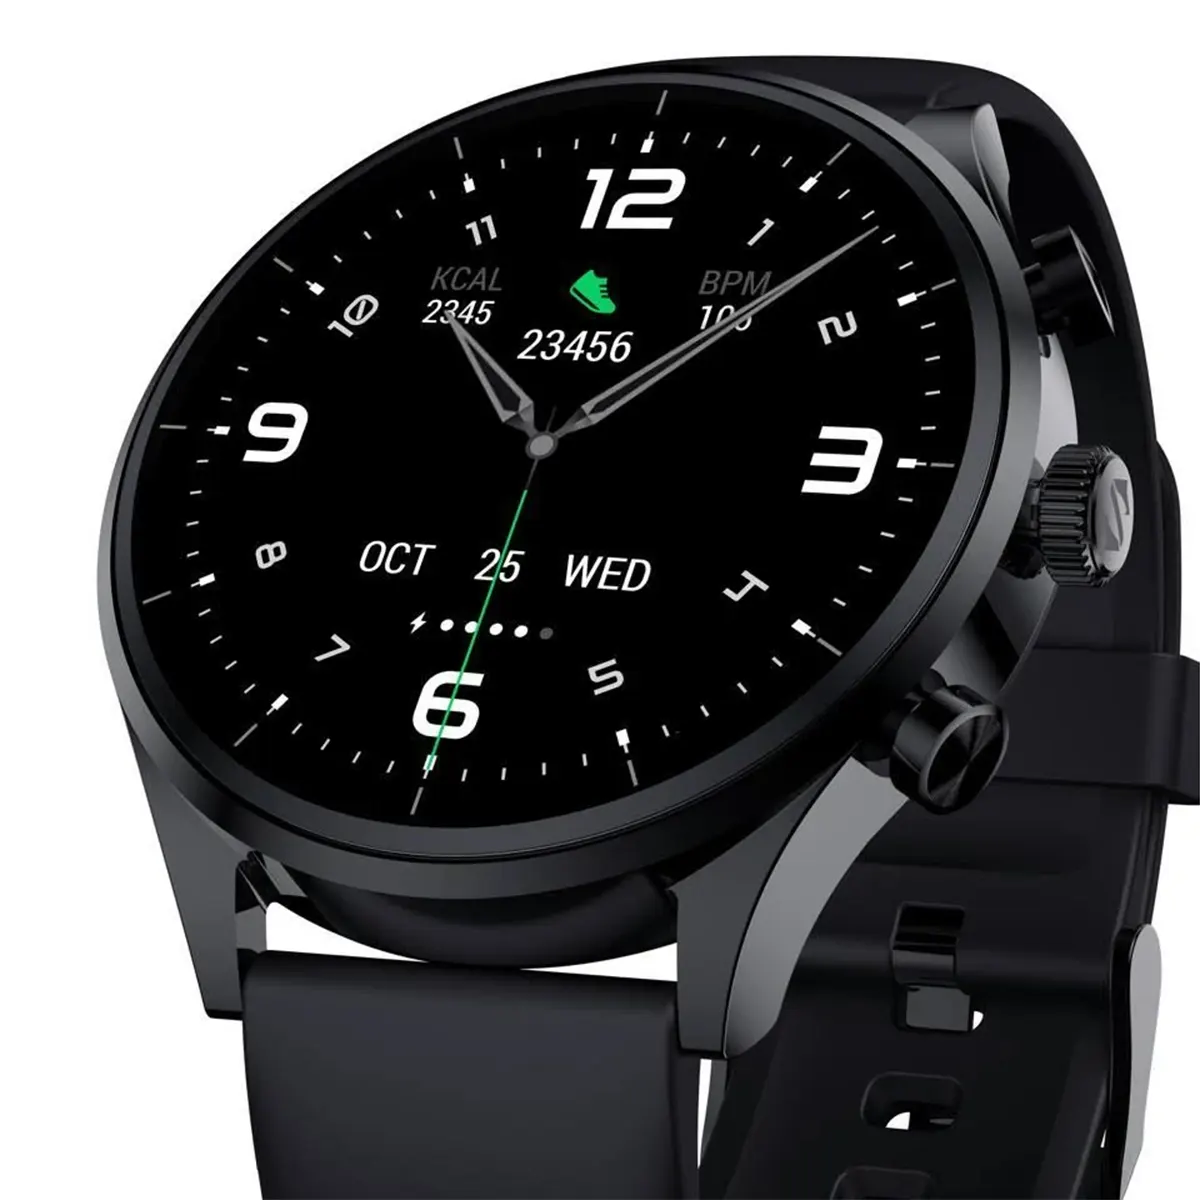 ساعت هوشمند بلک شارک Black Shark S1 Classic Smart Watch رنگ مشکی (3)